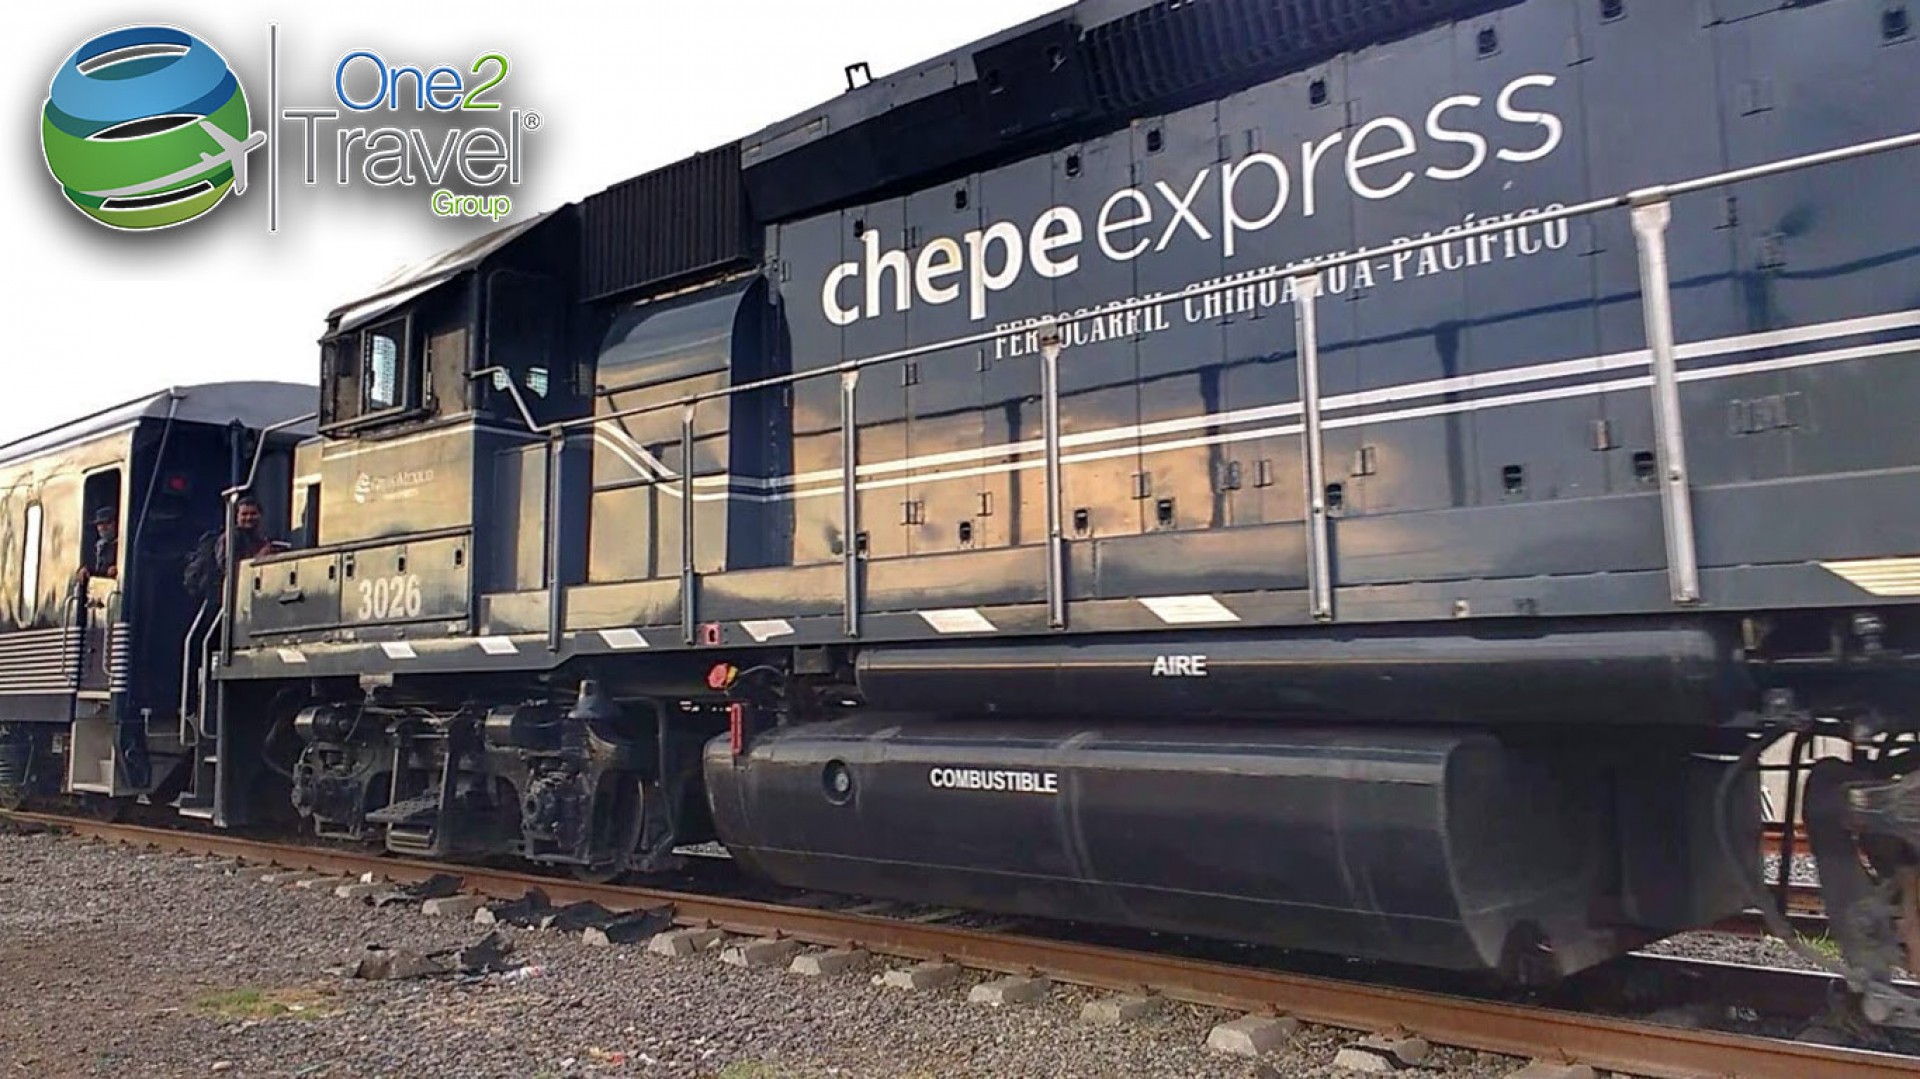 El Chepe Express ofrece descuento de 40%